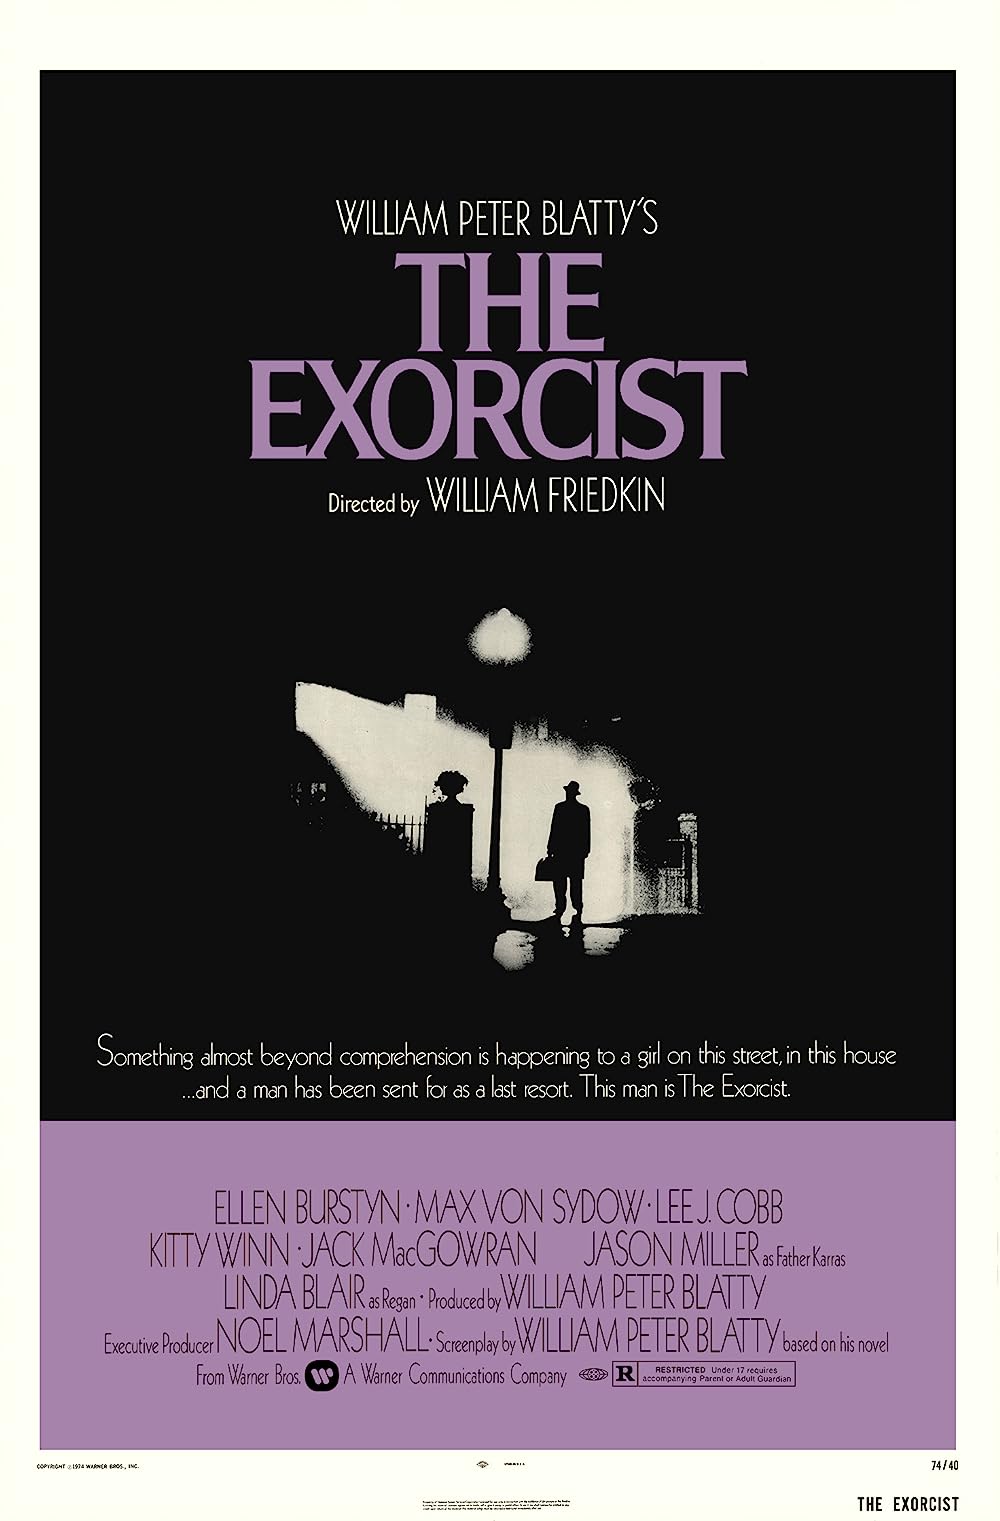 FULL MOVIE: The Exorcist (1973) [Horror]